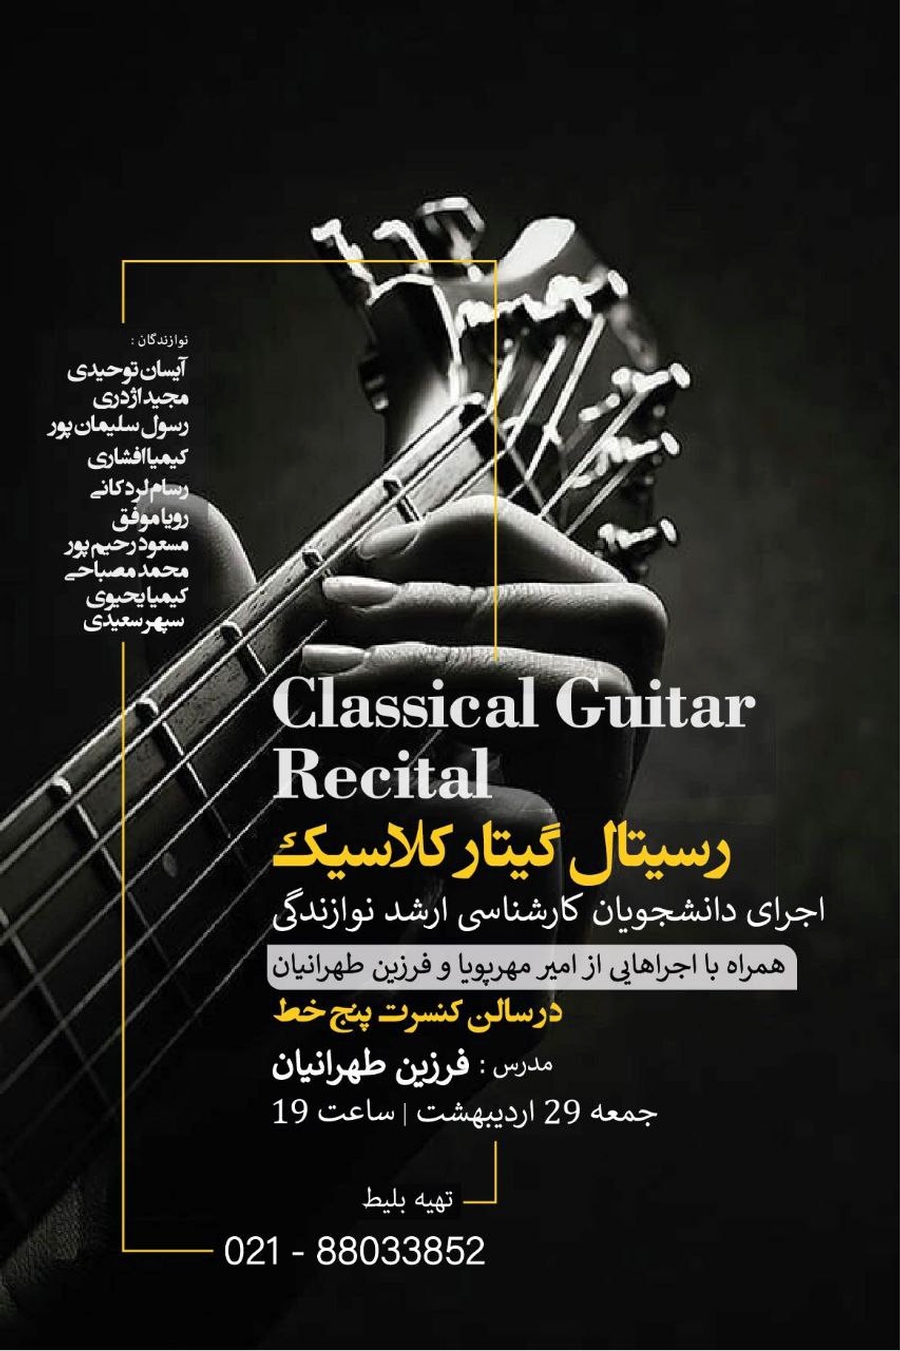 Classical Guitar Recital